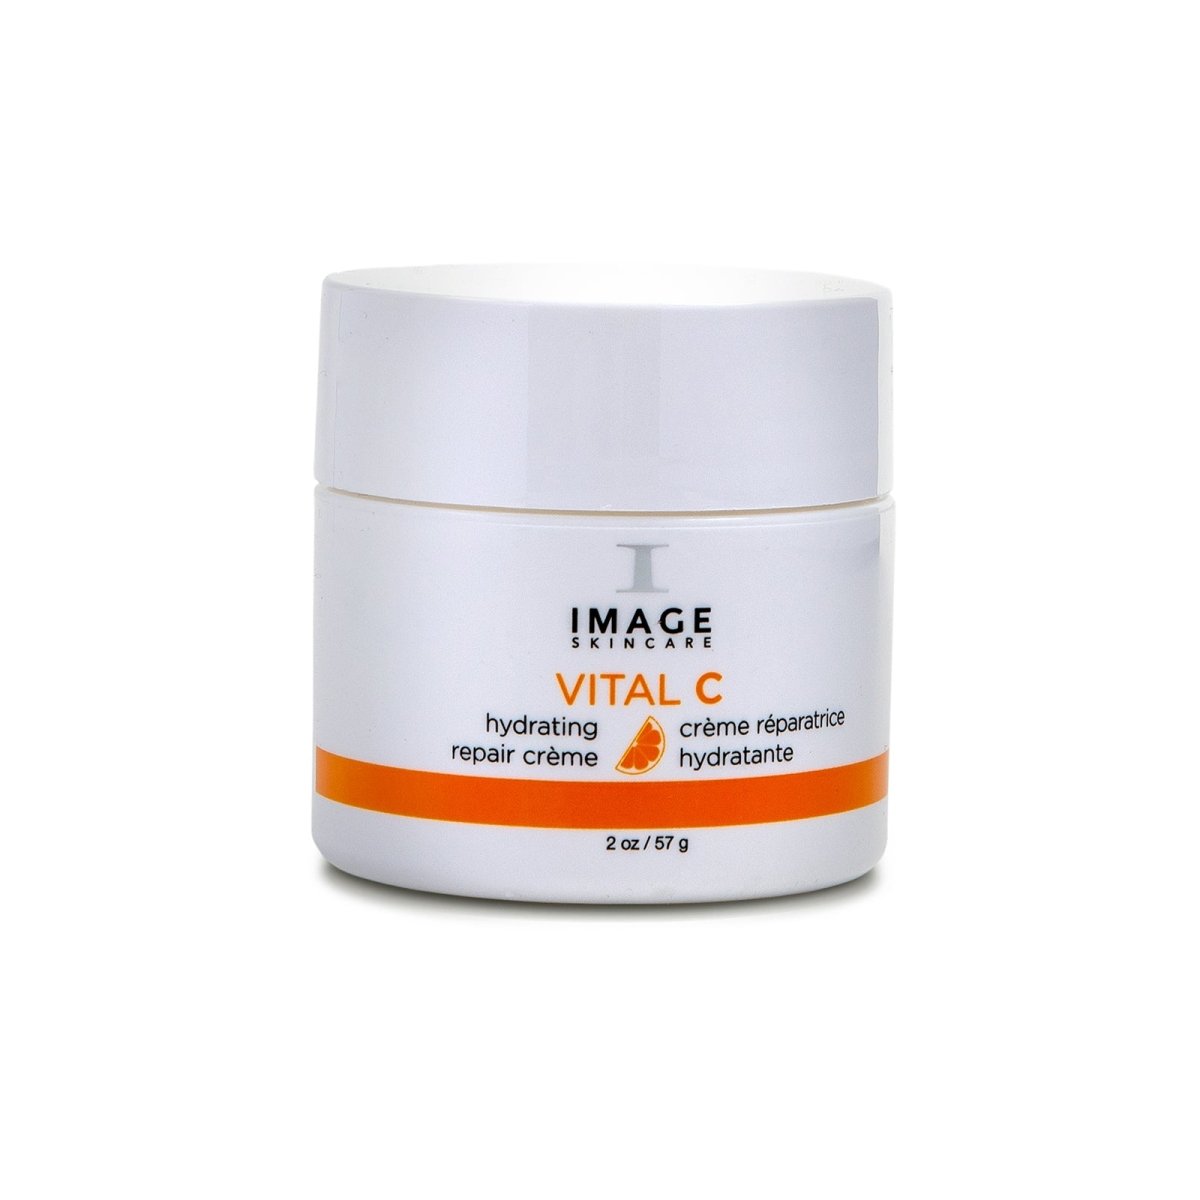 IMAGE Skincare Vital C Hydrating Repair Crème - SkincareEssentials